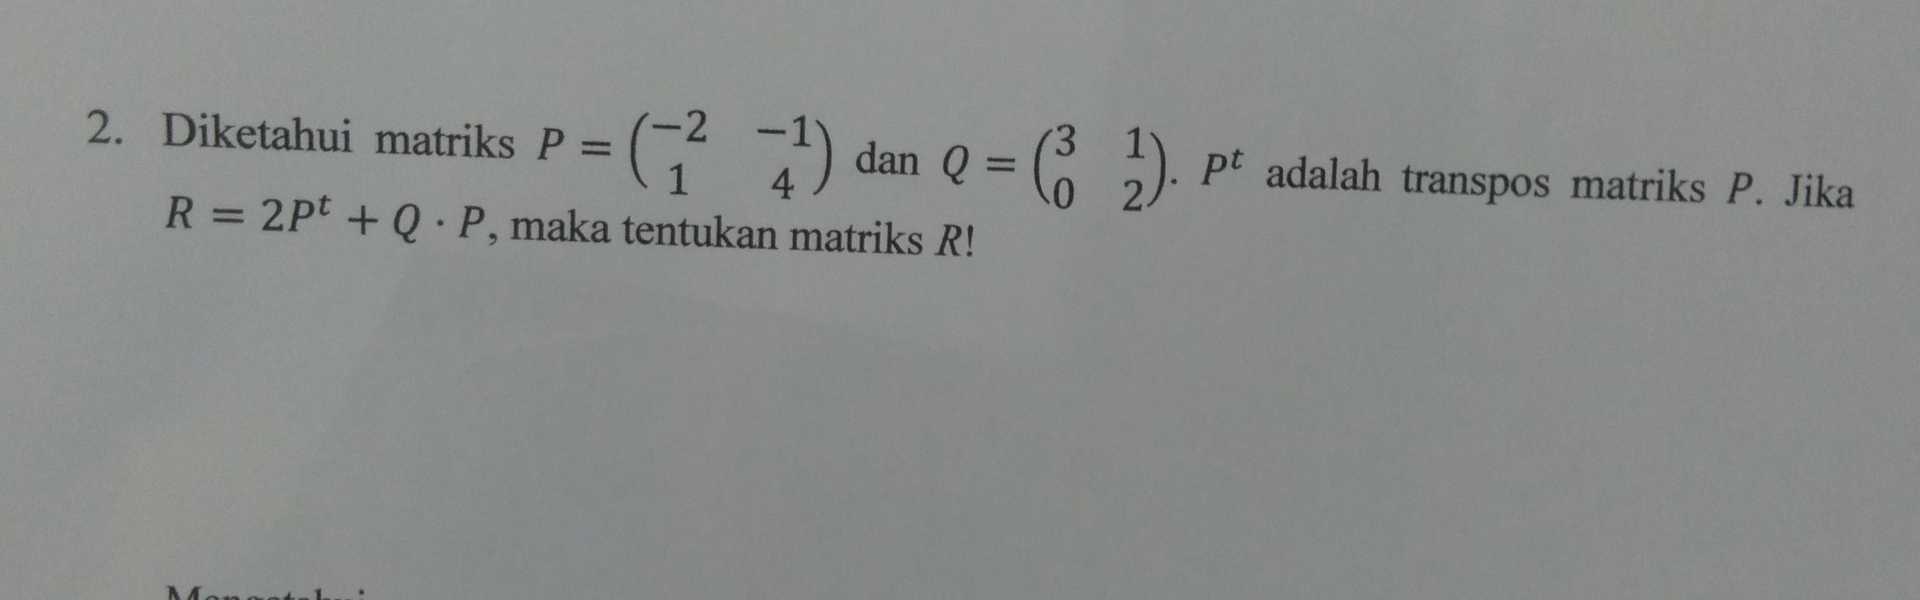 2. Diketahui matriks P = ( 21) dan Q = ( 2). Pt adalah transpos matriks P. Jika R = 2pt + Q.P, maka tentukan matriks R! . 